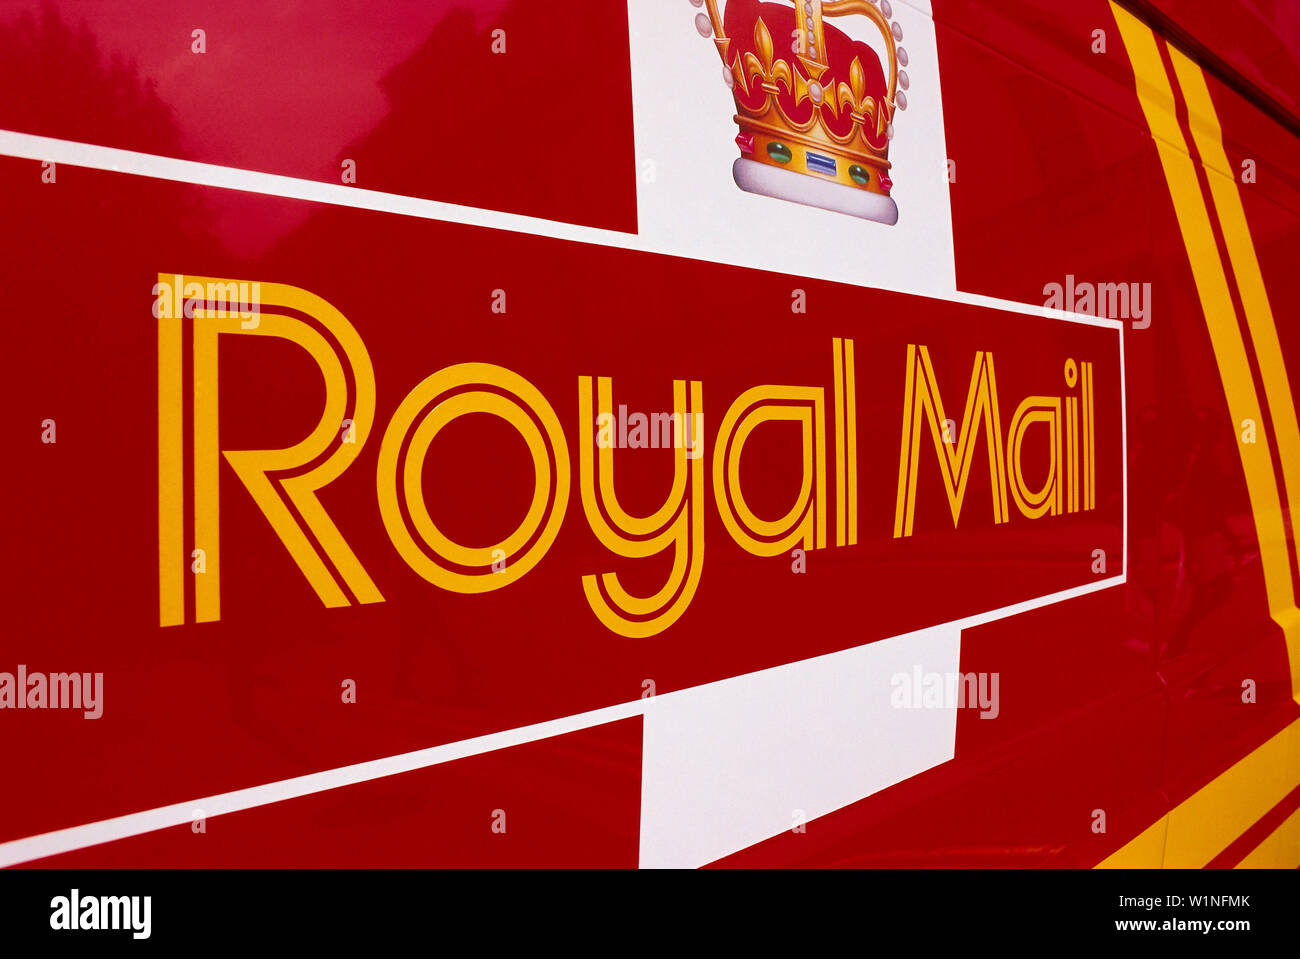 Royal Mail rouge, Londres, Angleterre, Grande-Bretagne Banque D'Images